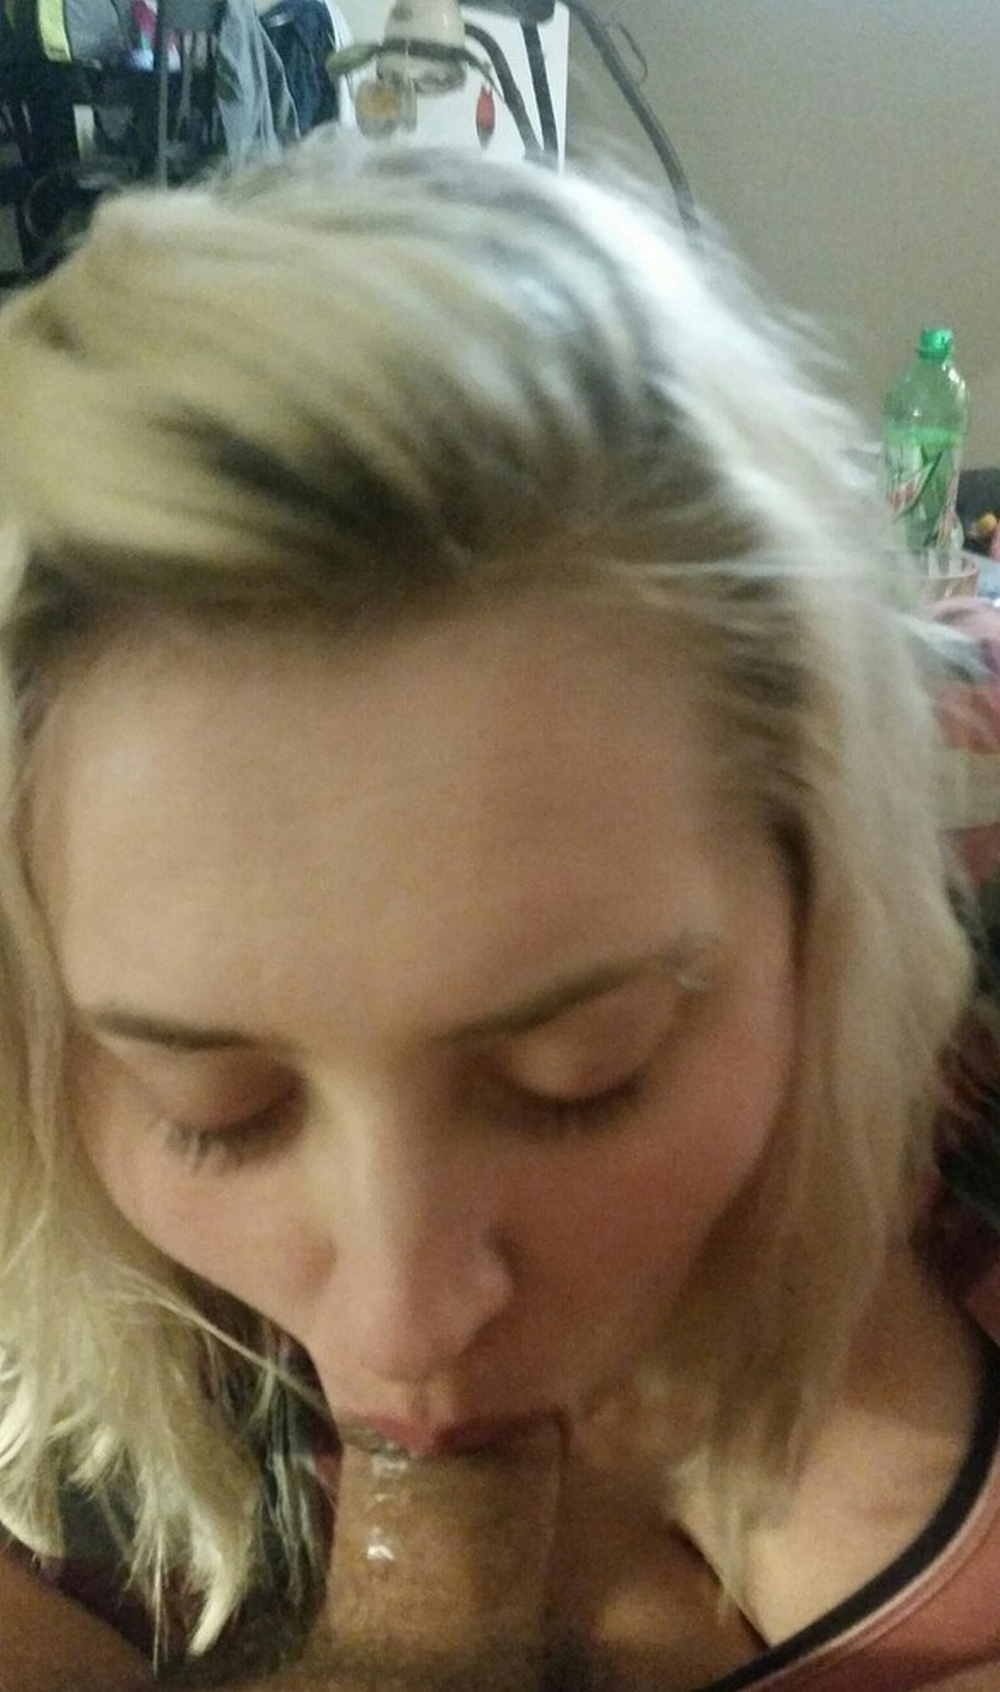 Блондинка с пирсингом в брови делает минет перед камерой 14 фотография